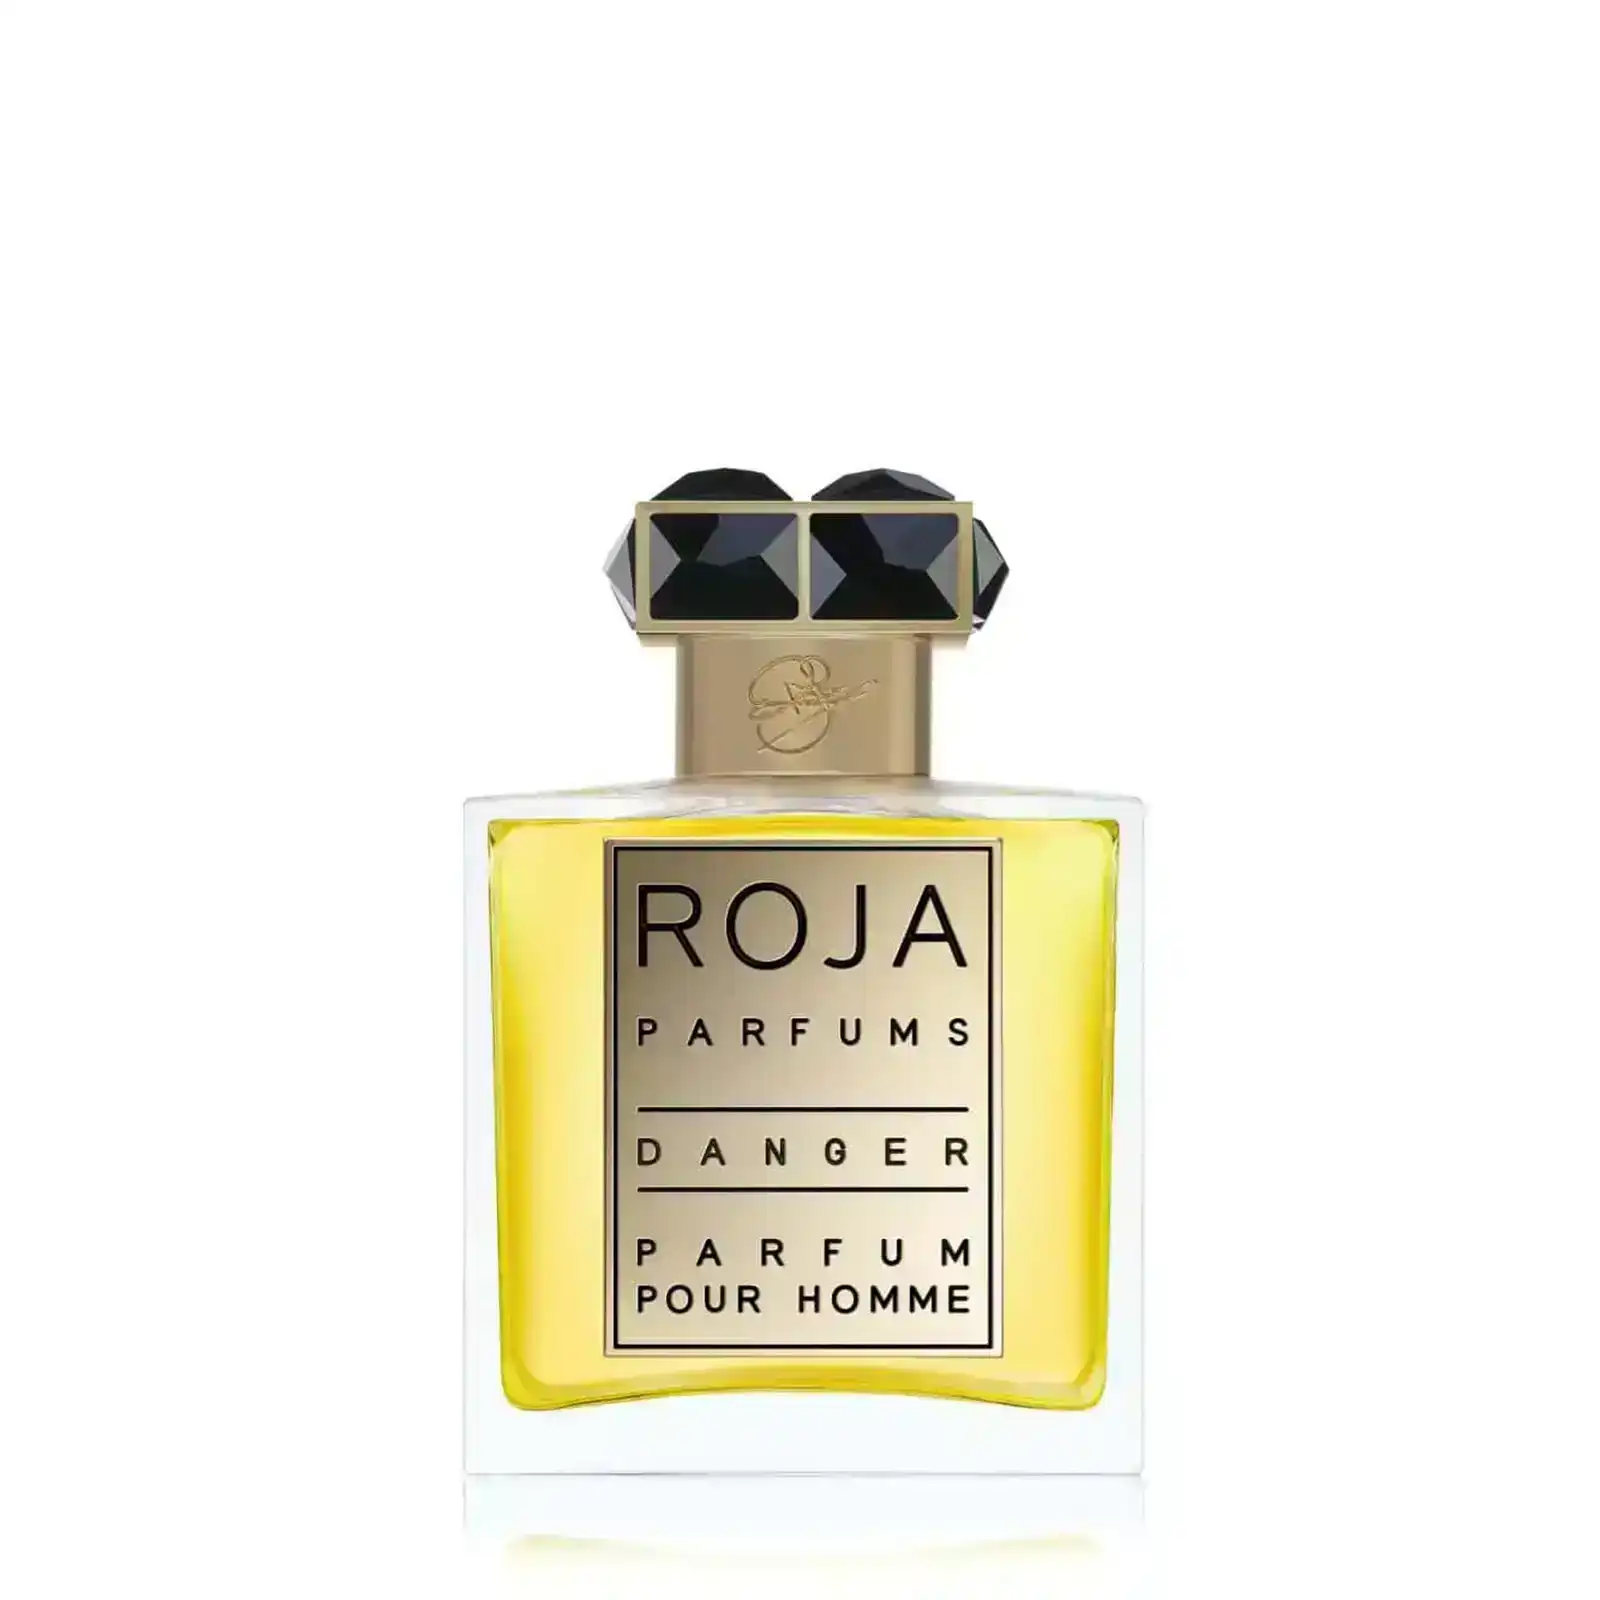 Roja Danger Pour Homme Parfum 50ml